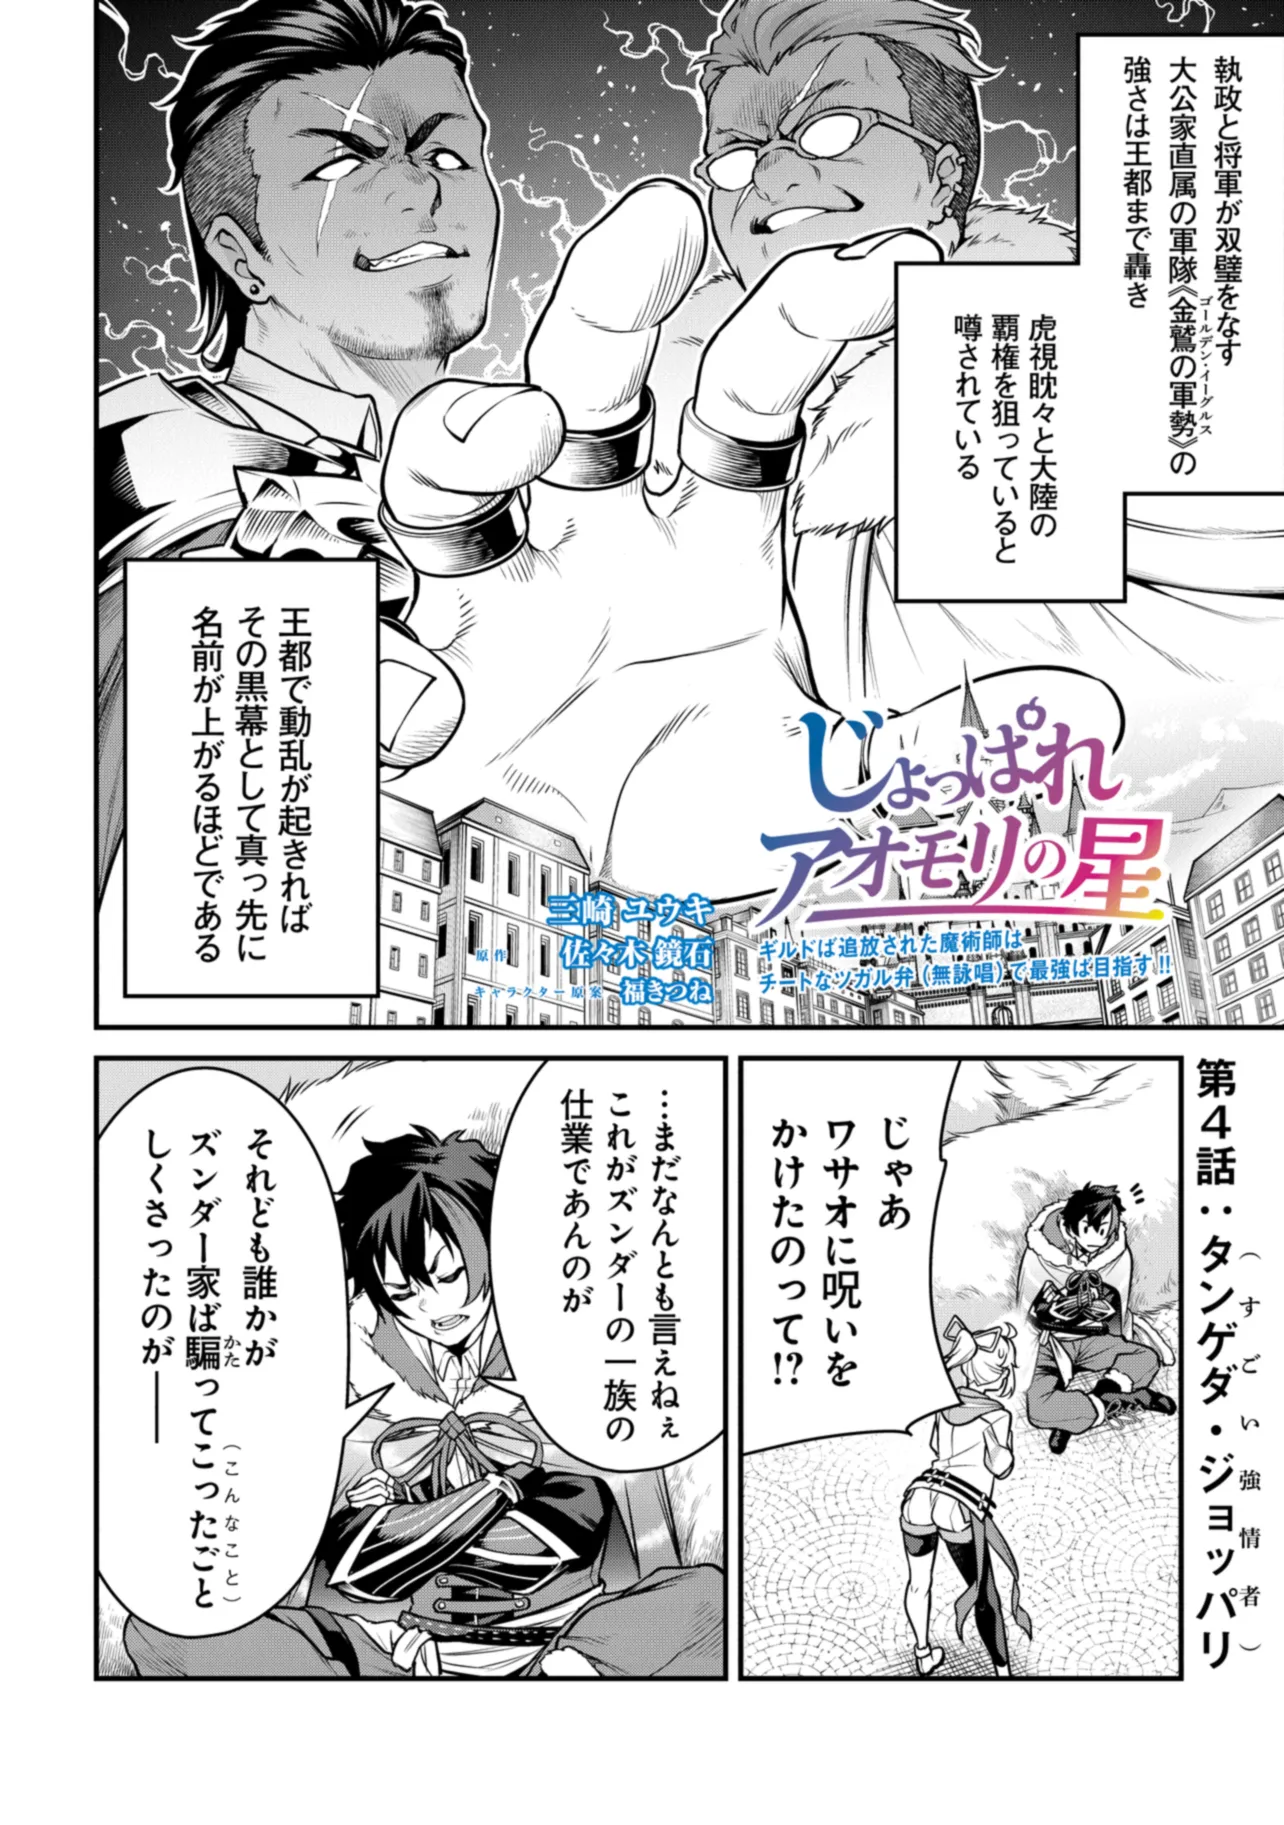 Joppare Aomori no Hoshi - Chapter 4 - Page 2